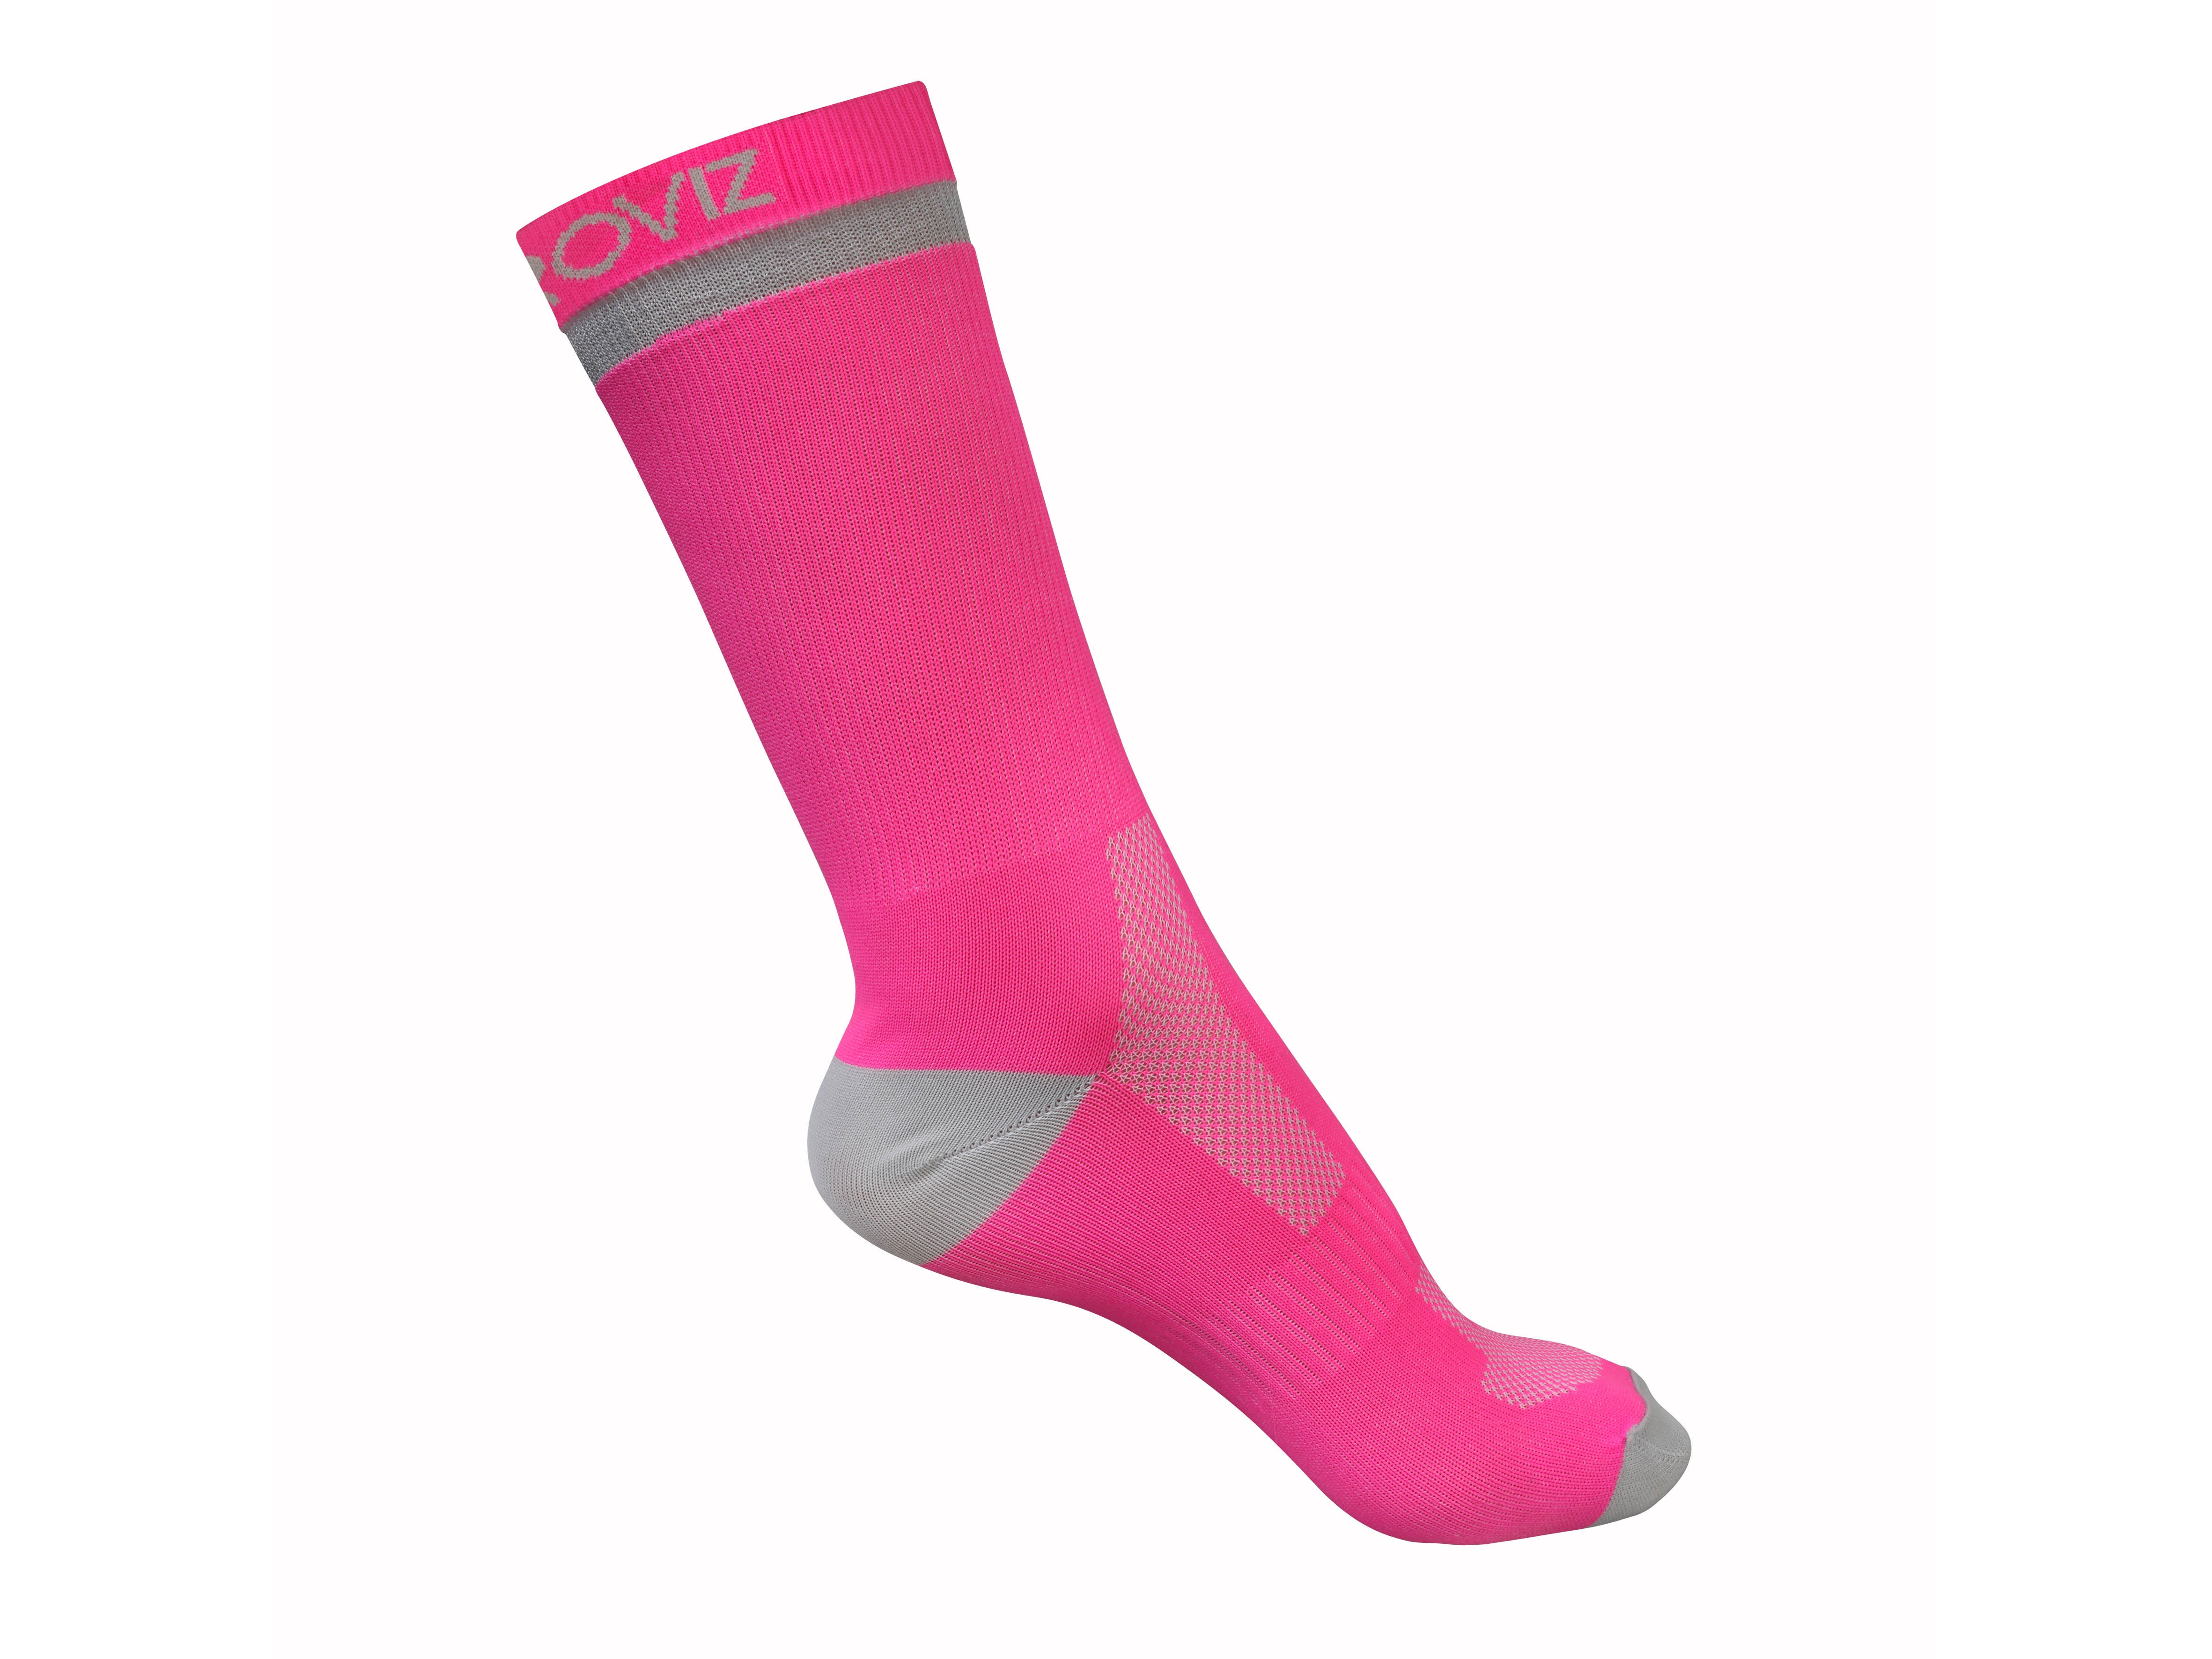 best women's running socks to prevent blisters